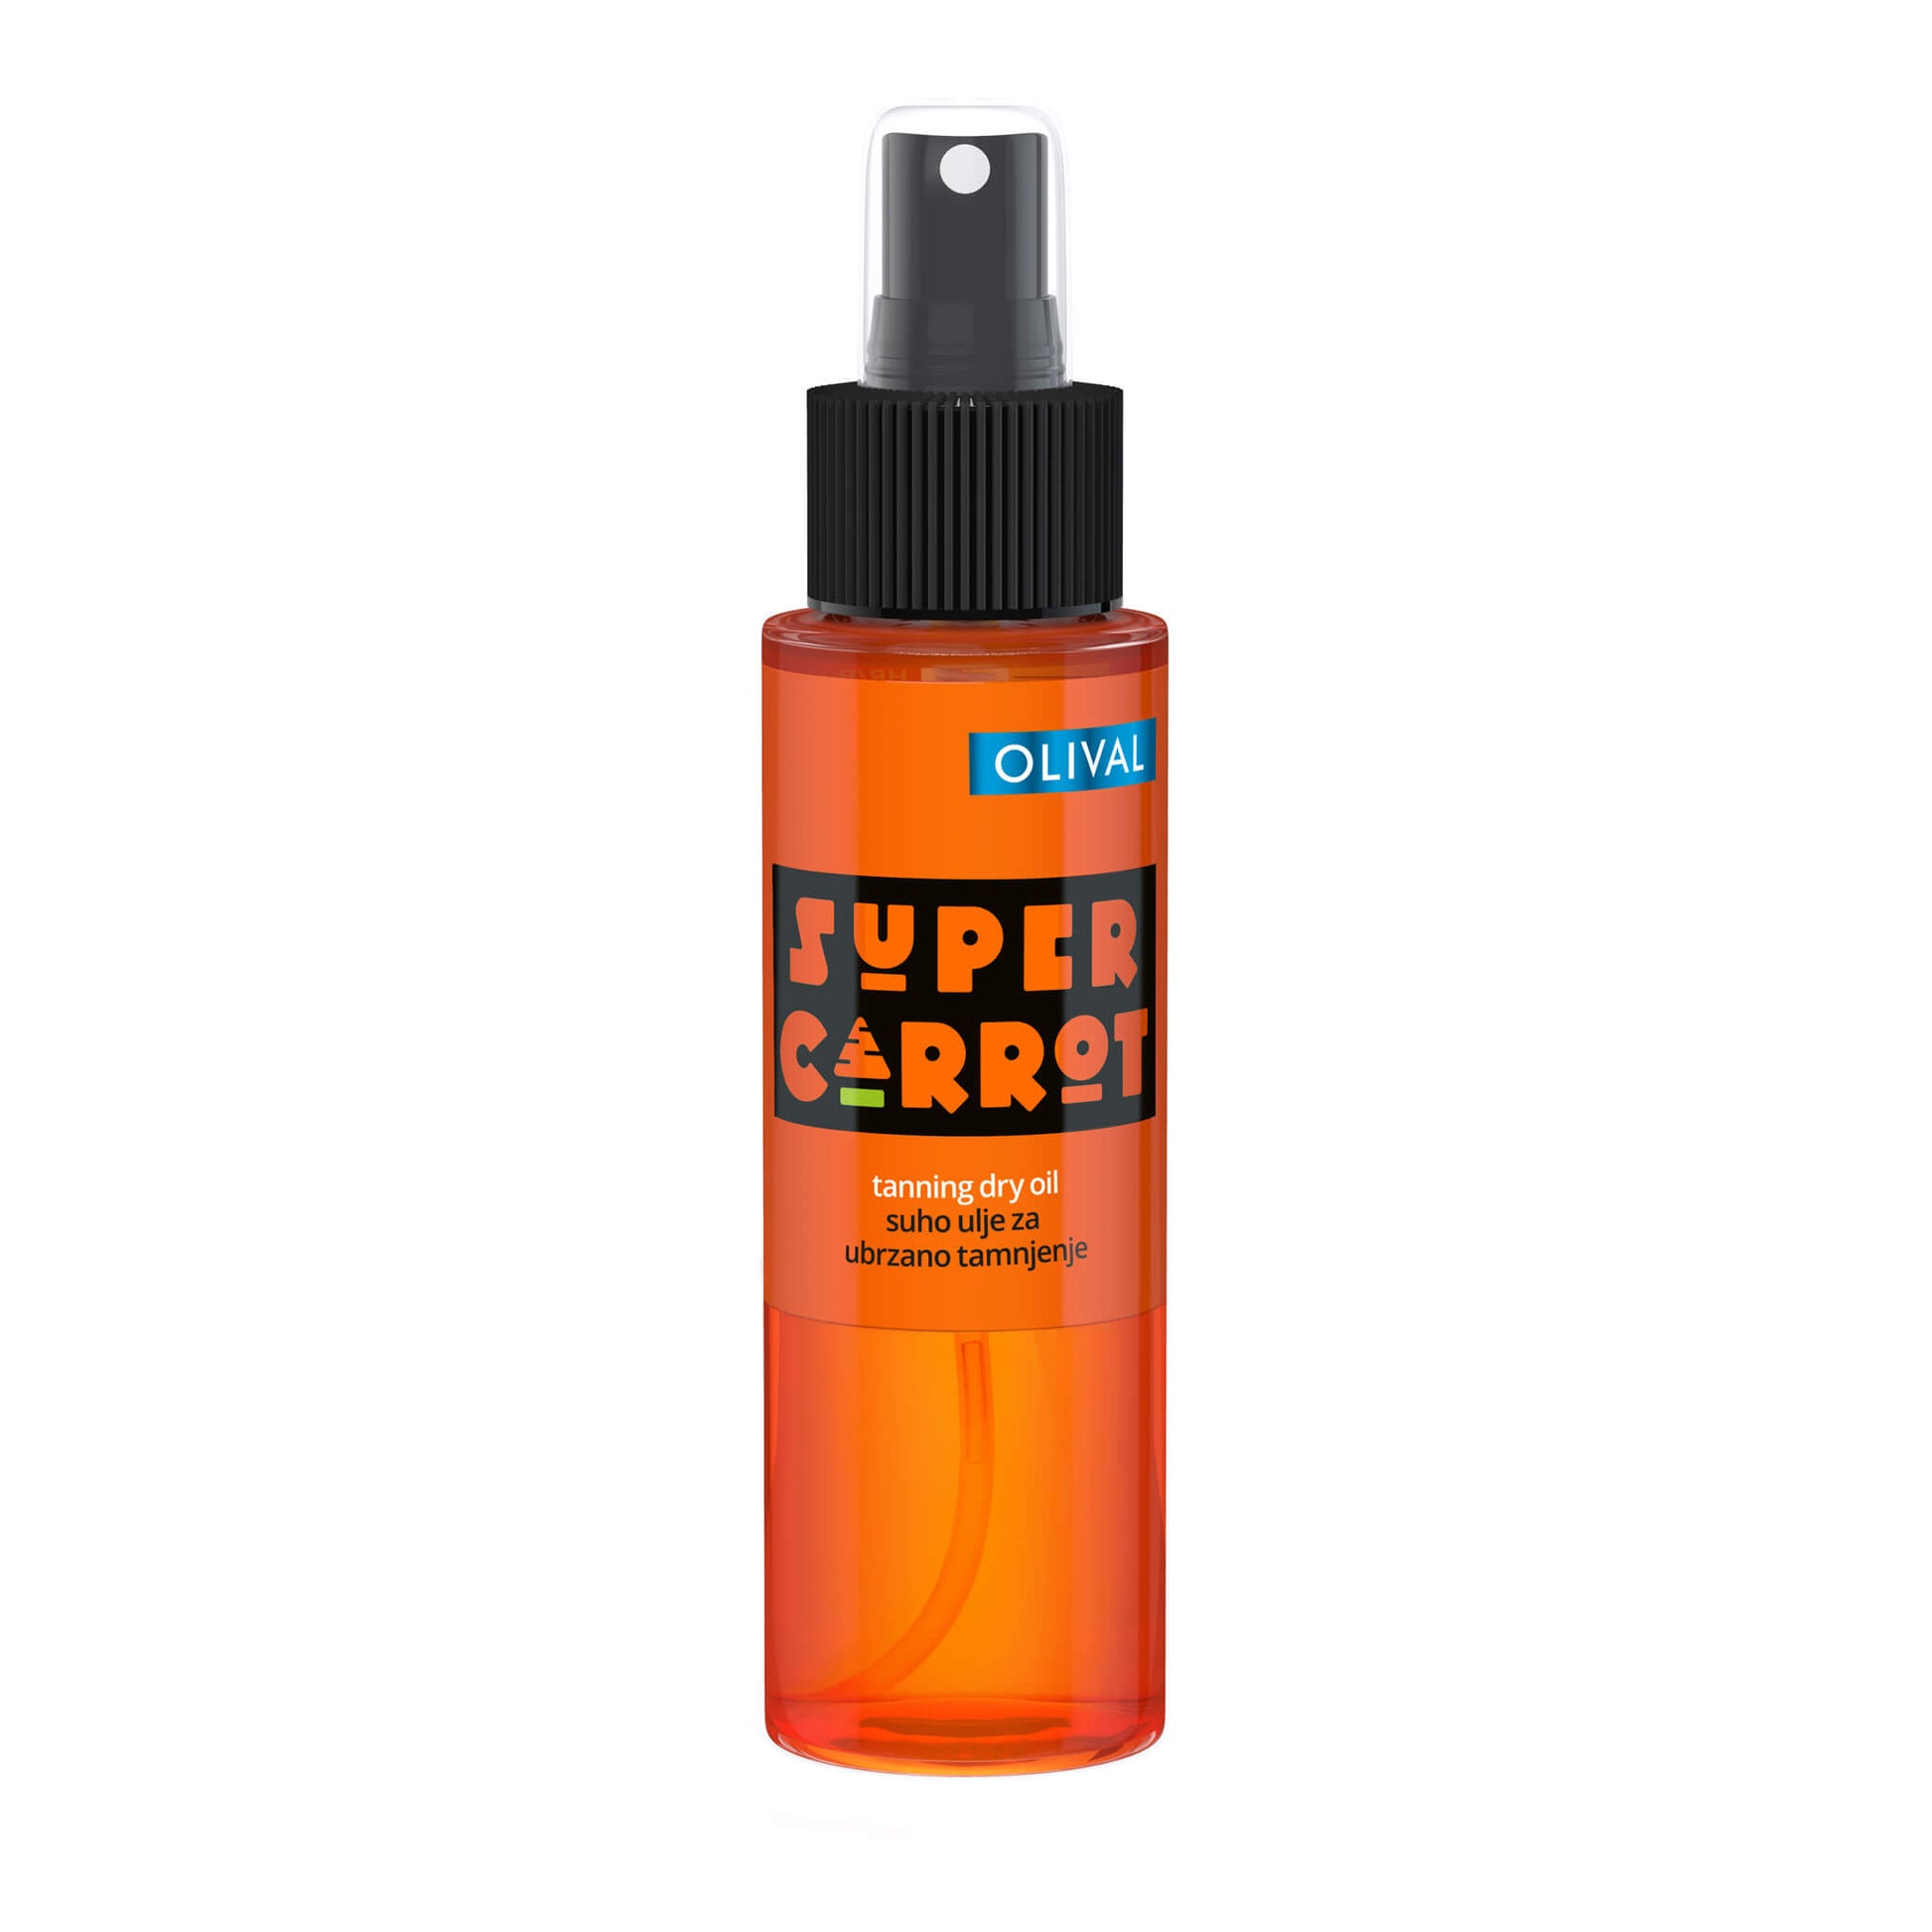 SUPER Carrot Tanning Dry Oil